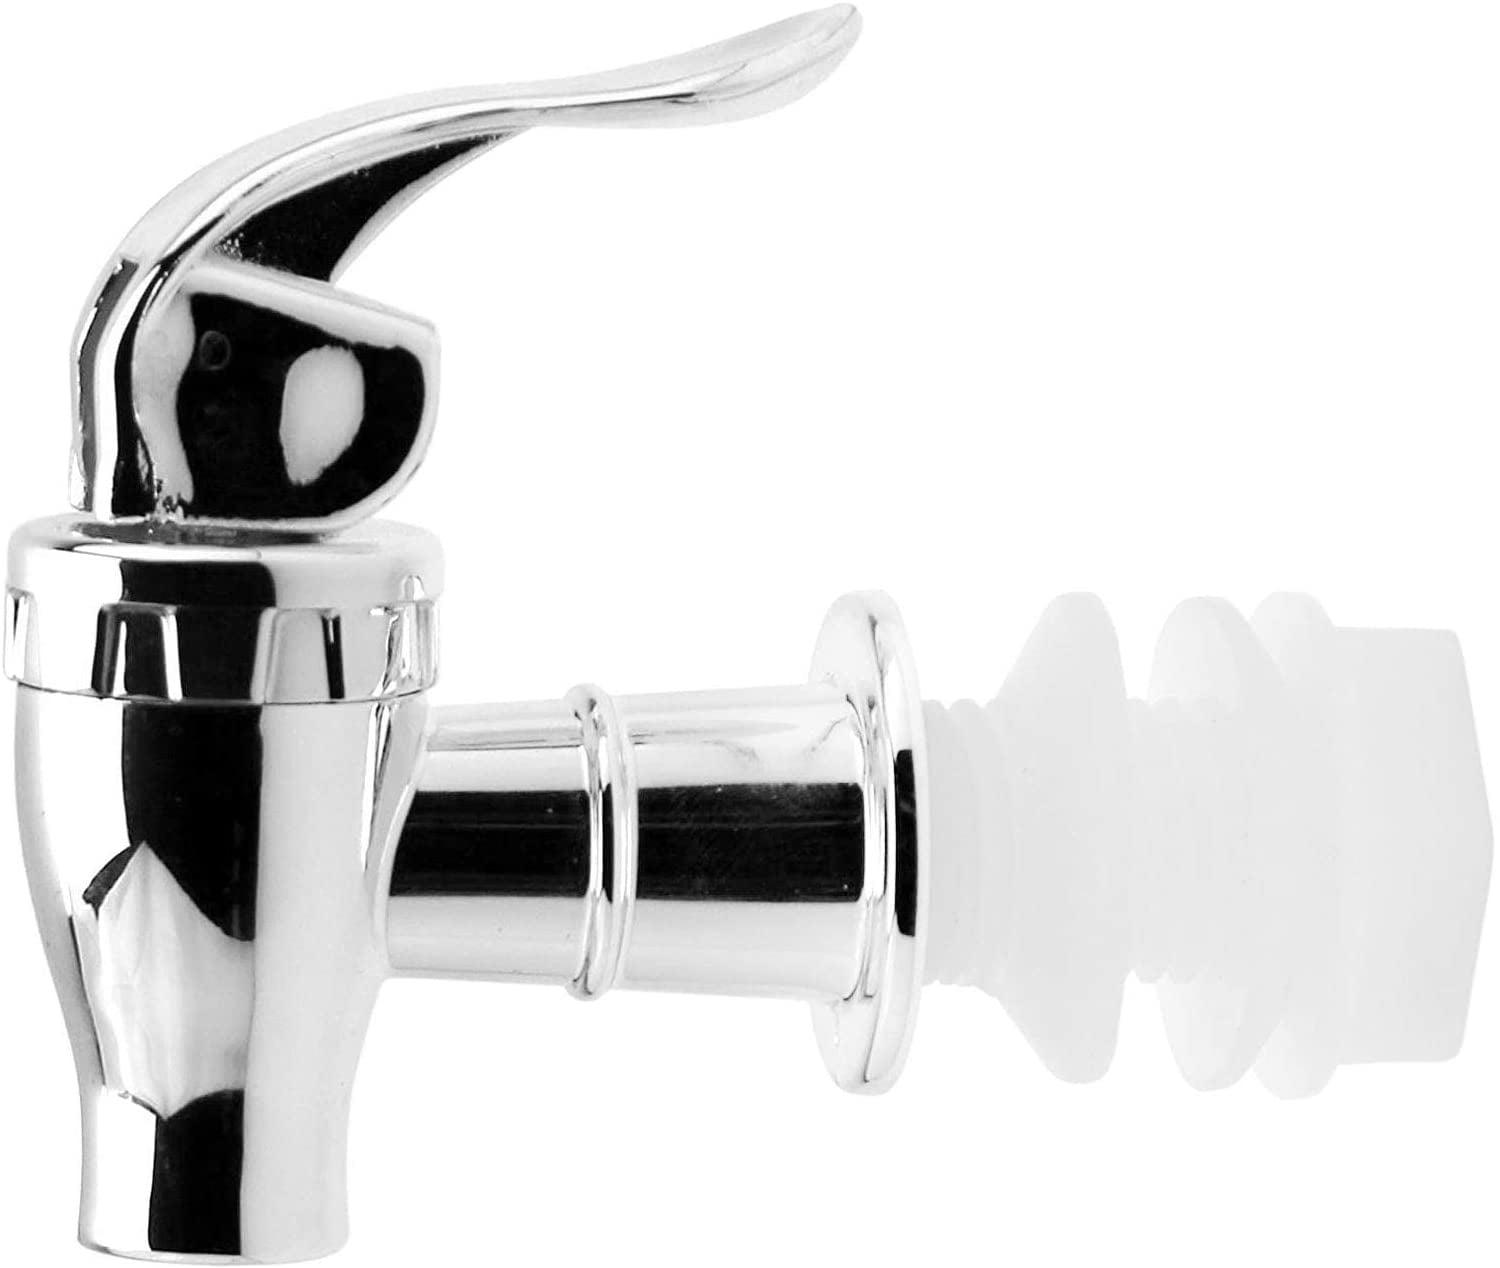 KISSLER 46-6884 Tub and Shower Knob Handle Kit 